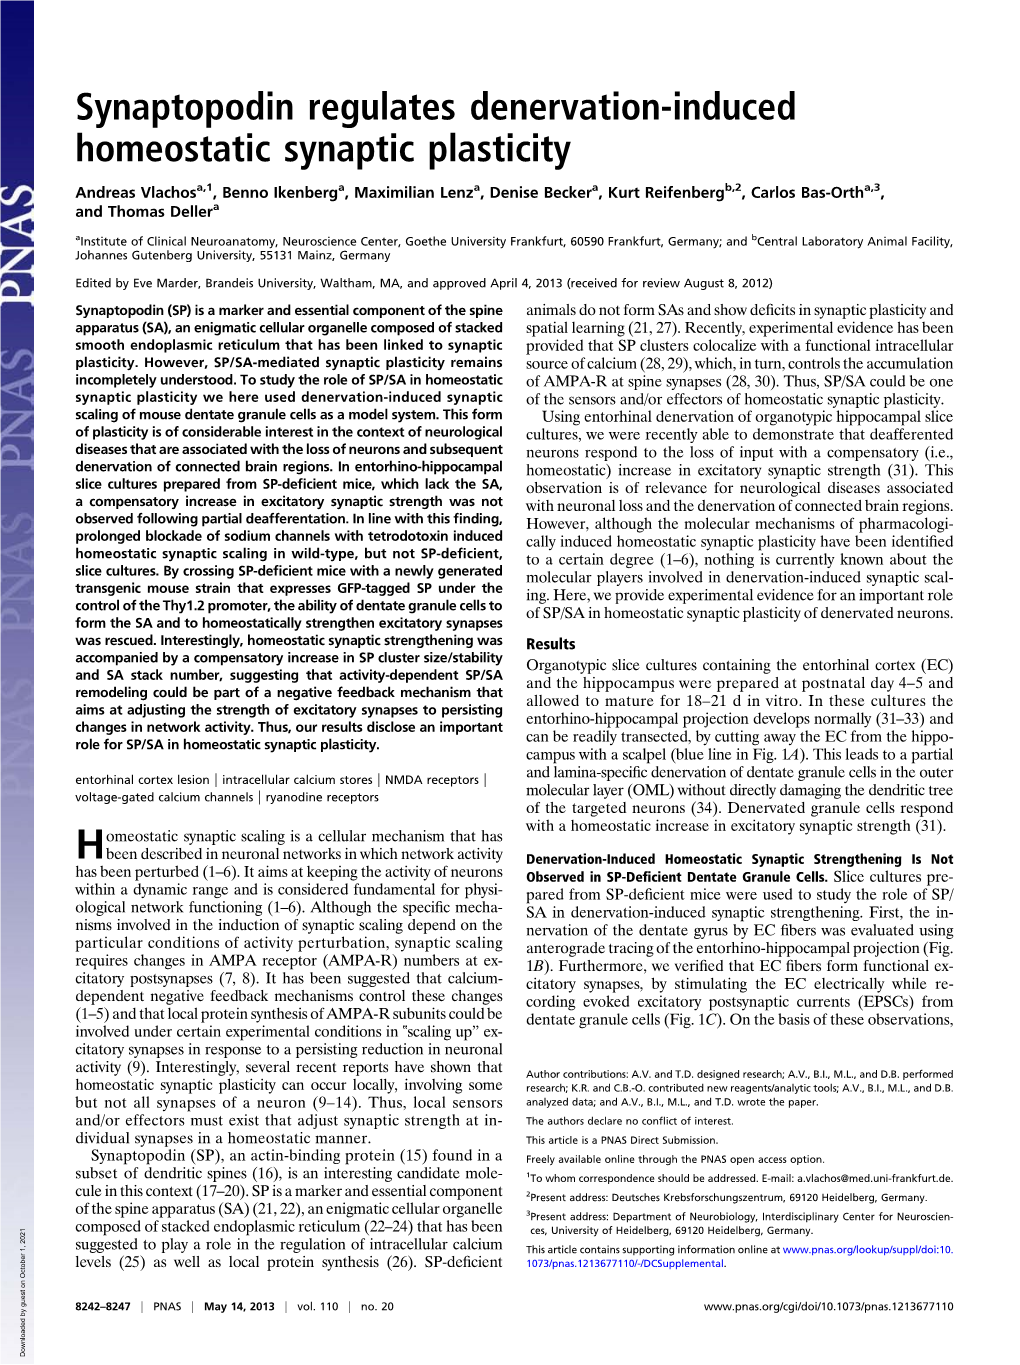 Synaptopodin Regulates Denervation-Induced Homeostatic Synaptic Plasticity